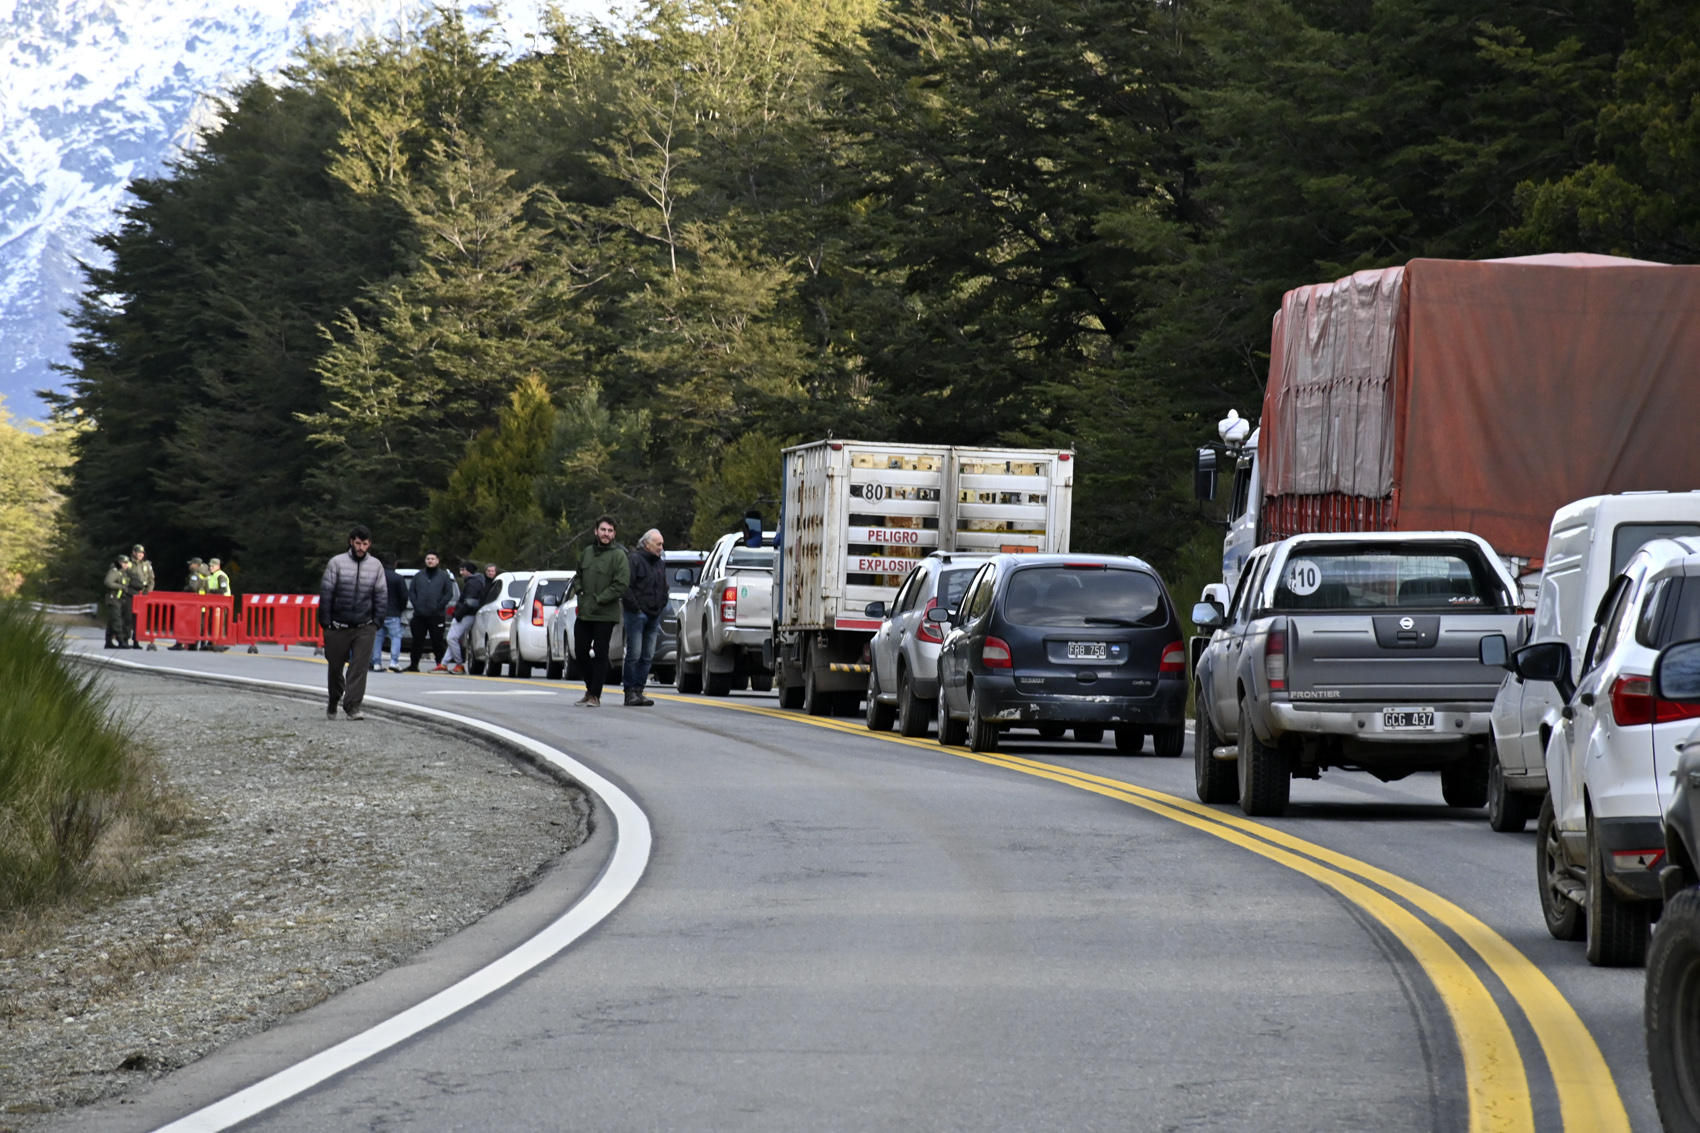 Gendarmería impidió avanzar hacia el lugar donde cortaban la ruta nacional 40, para evitar posibles incidentes entre encapuchados y automovilistas. (Foto Alfredo Leiva)